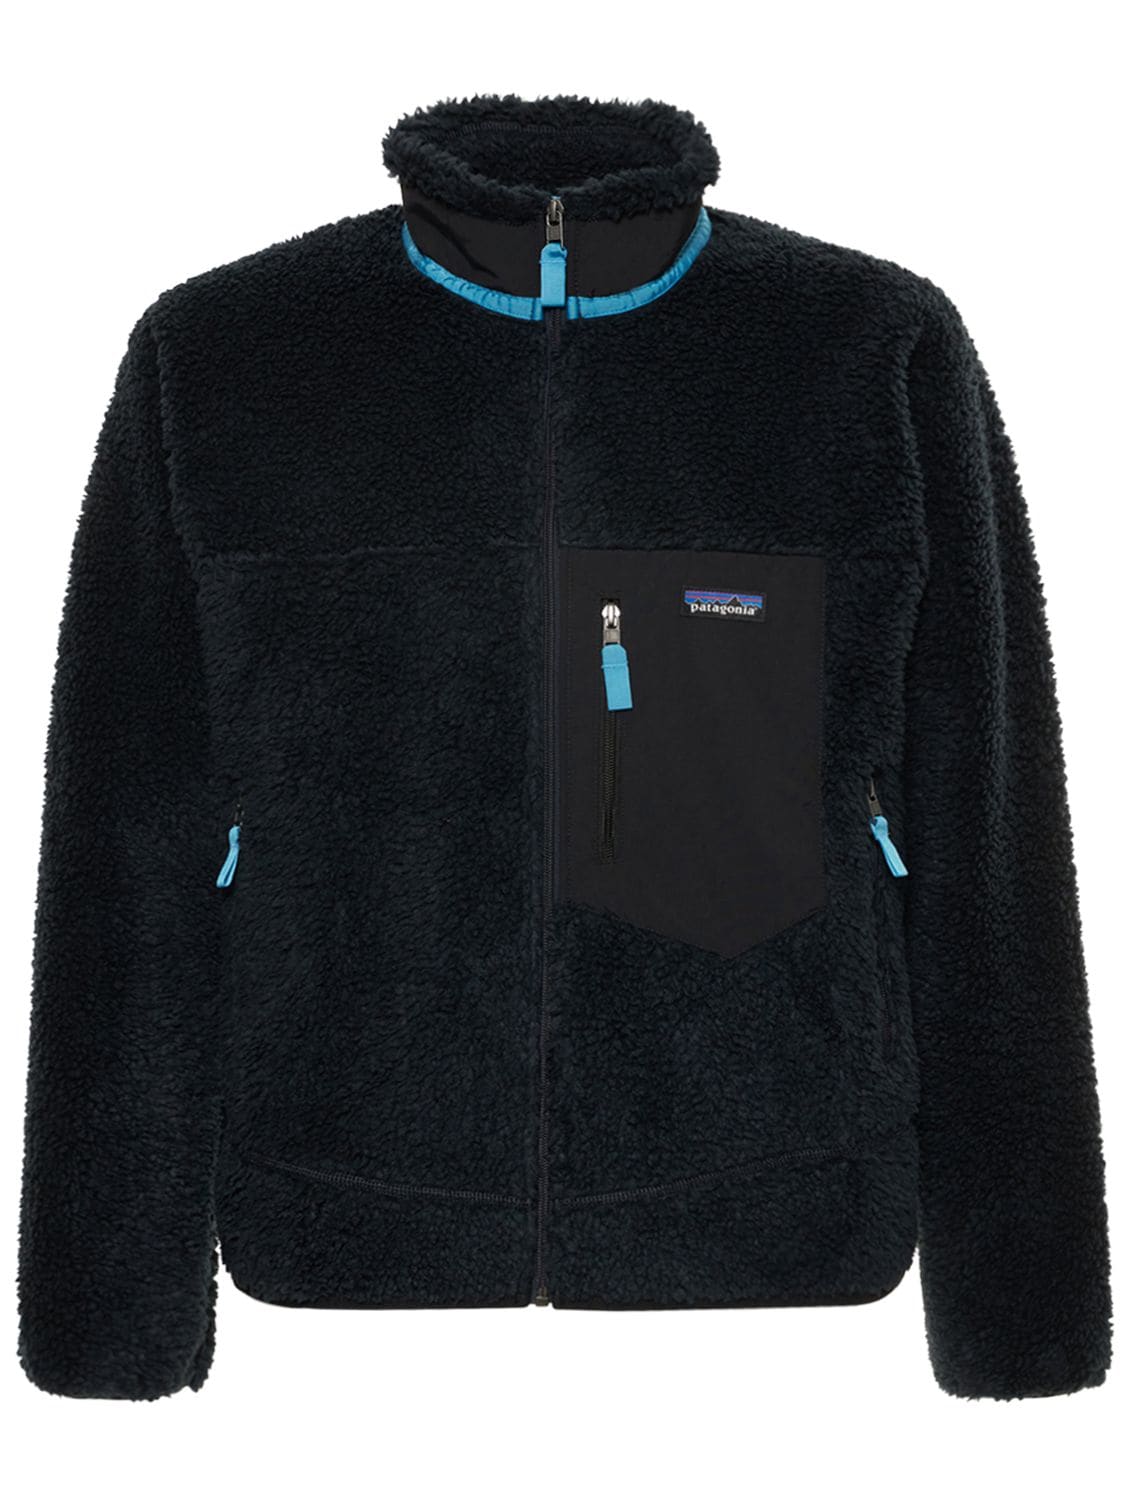 Patagonia Classic Retro Zip Jacket